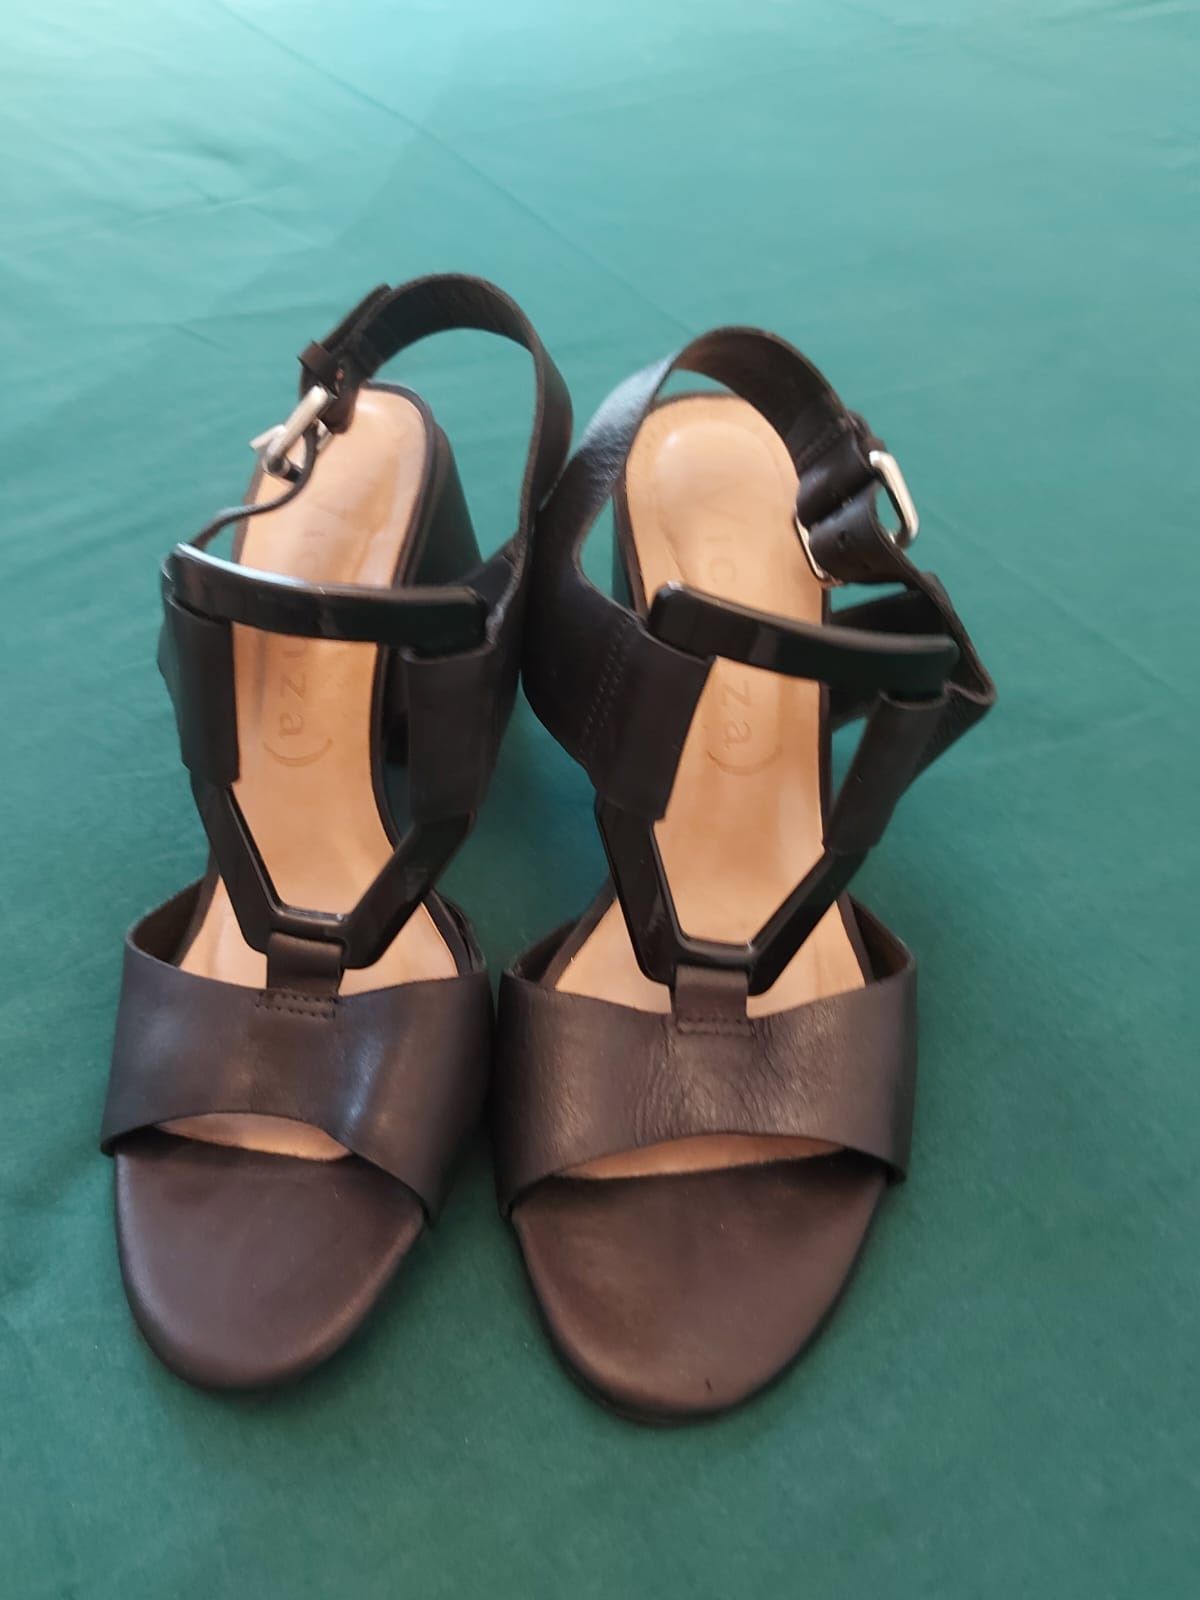 Жіноче взуття (босоніжки, туфлі ) італійська шкіра 37 розмір